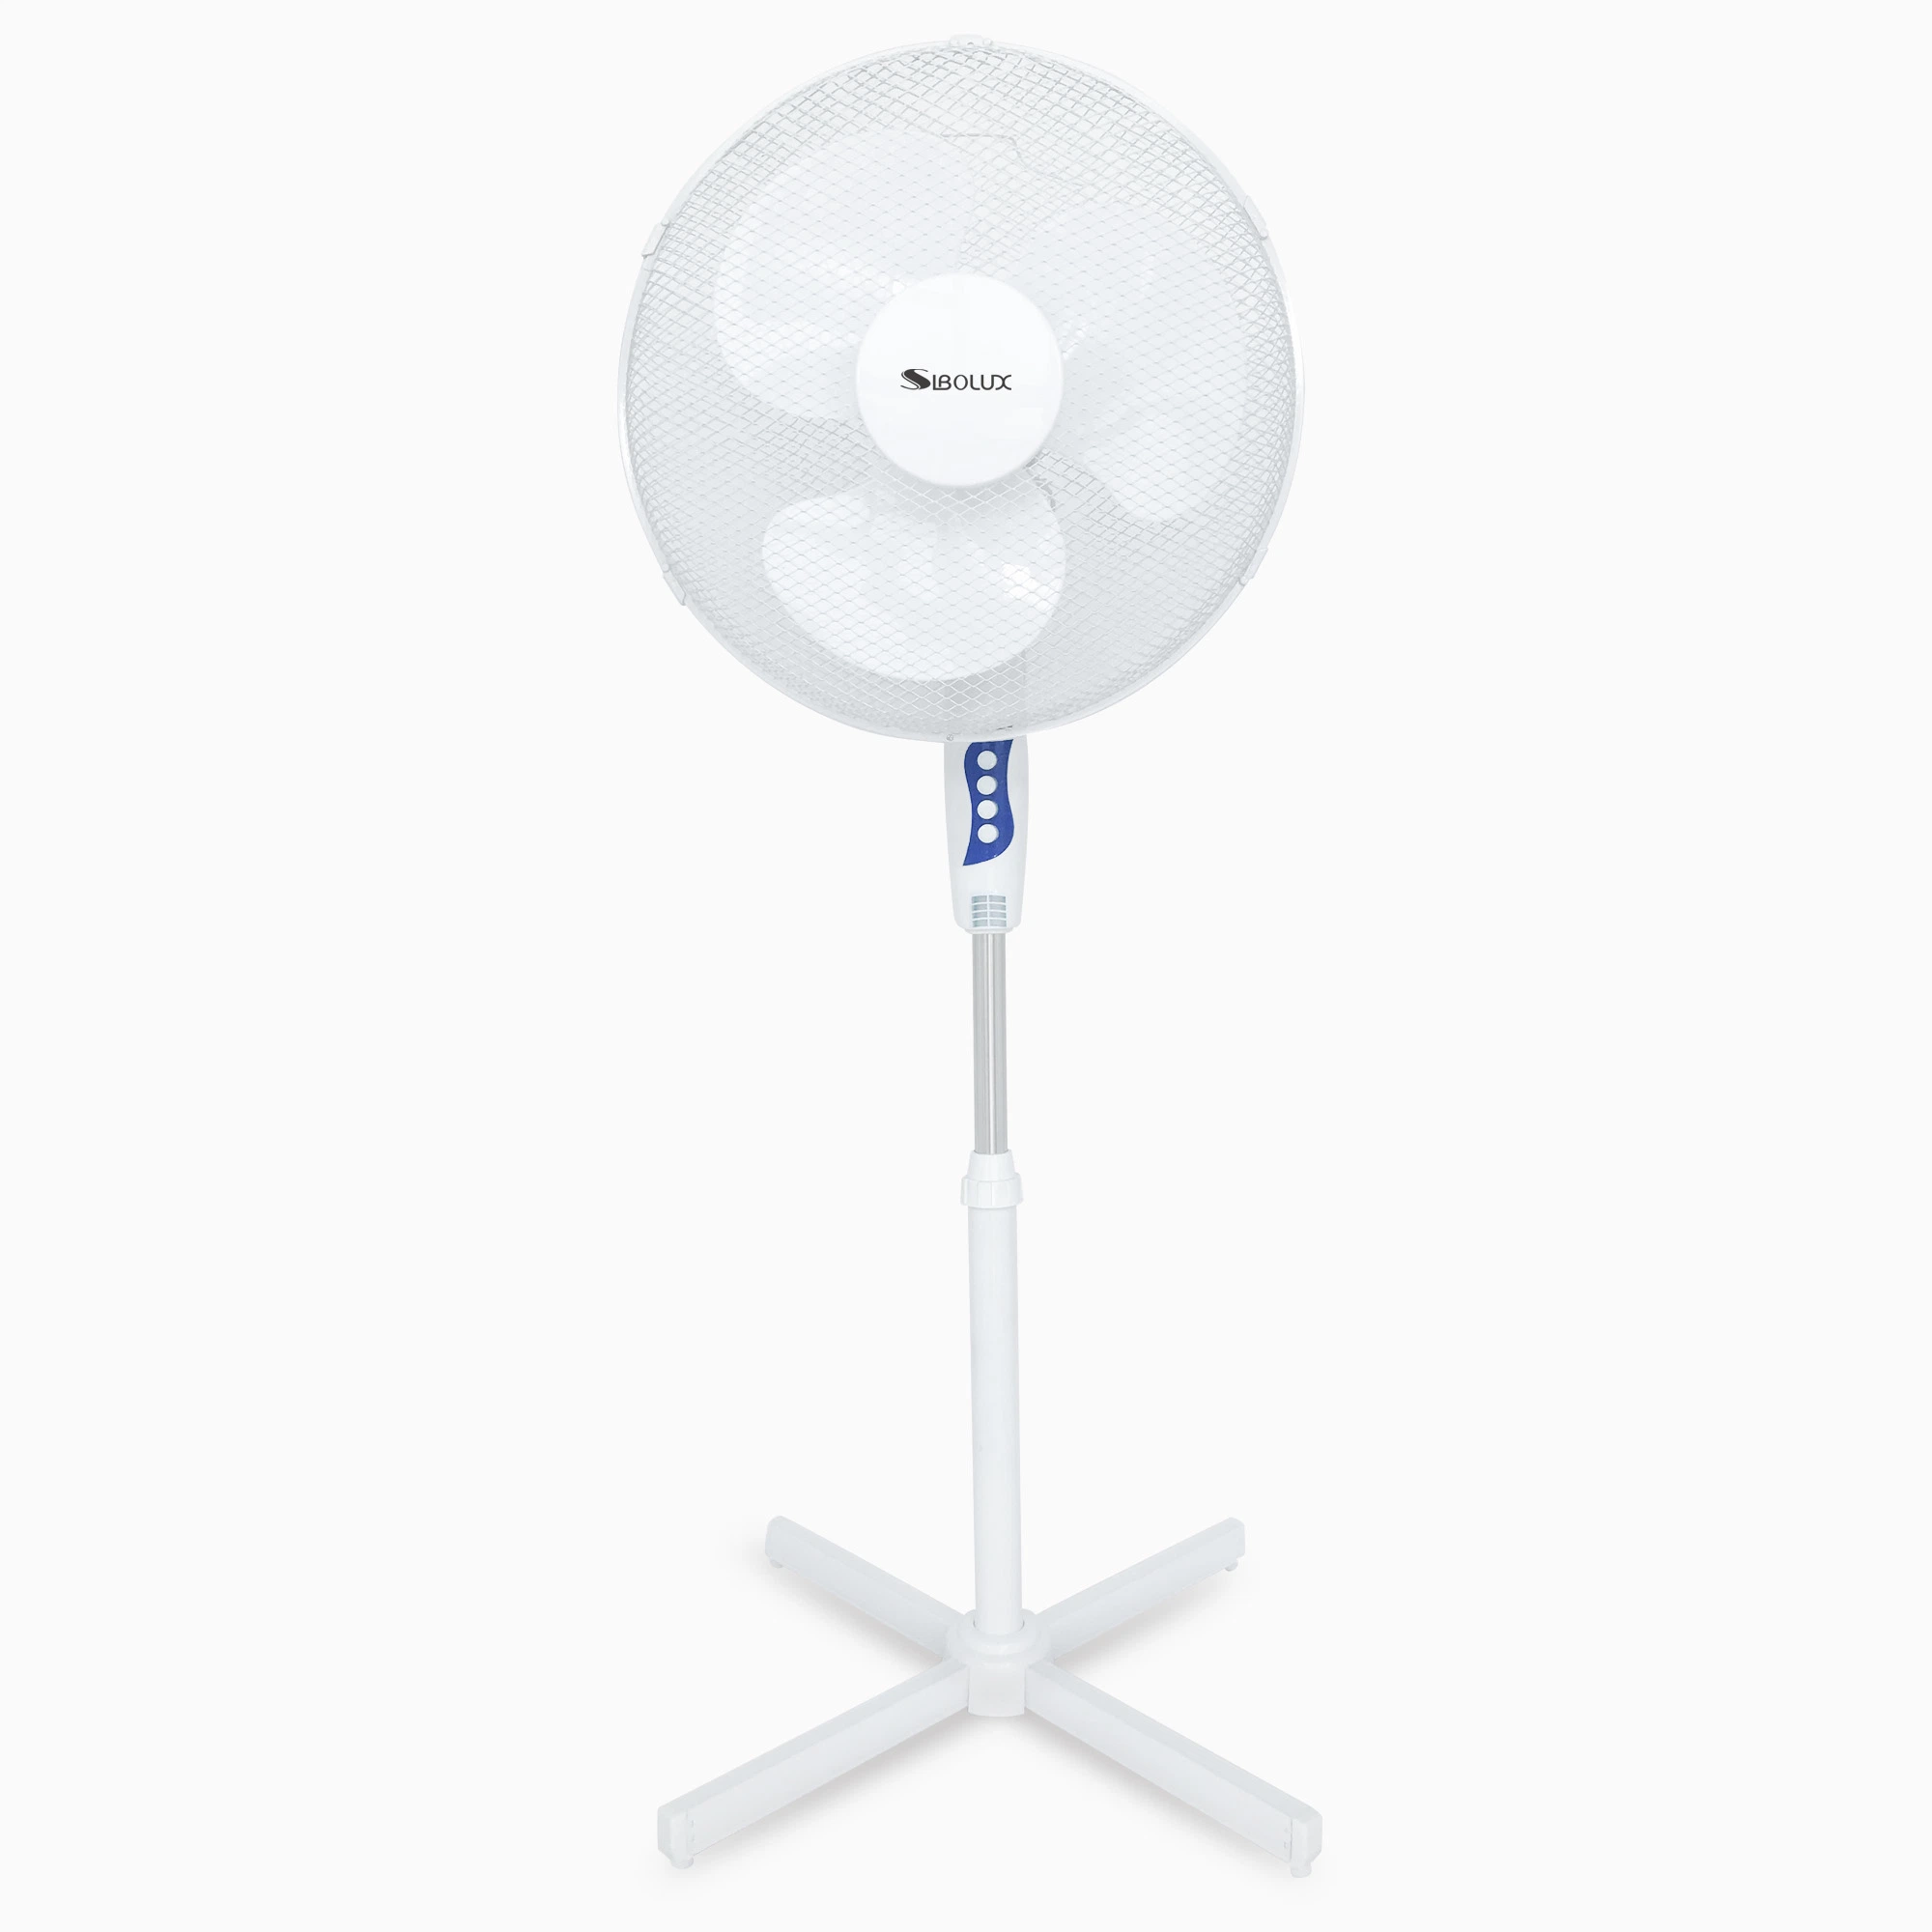 16 Inch Plastic Home Stand Fan Basic Electric Fan Lower Noise Pedestal Fan Cost-Effective Floor Fan for Europe